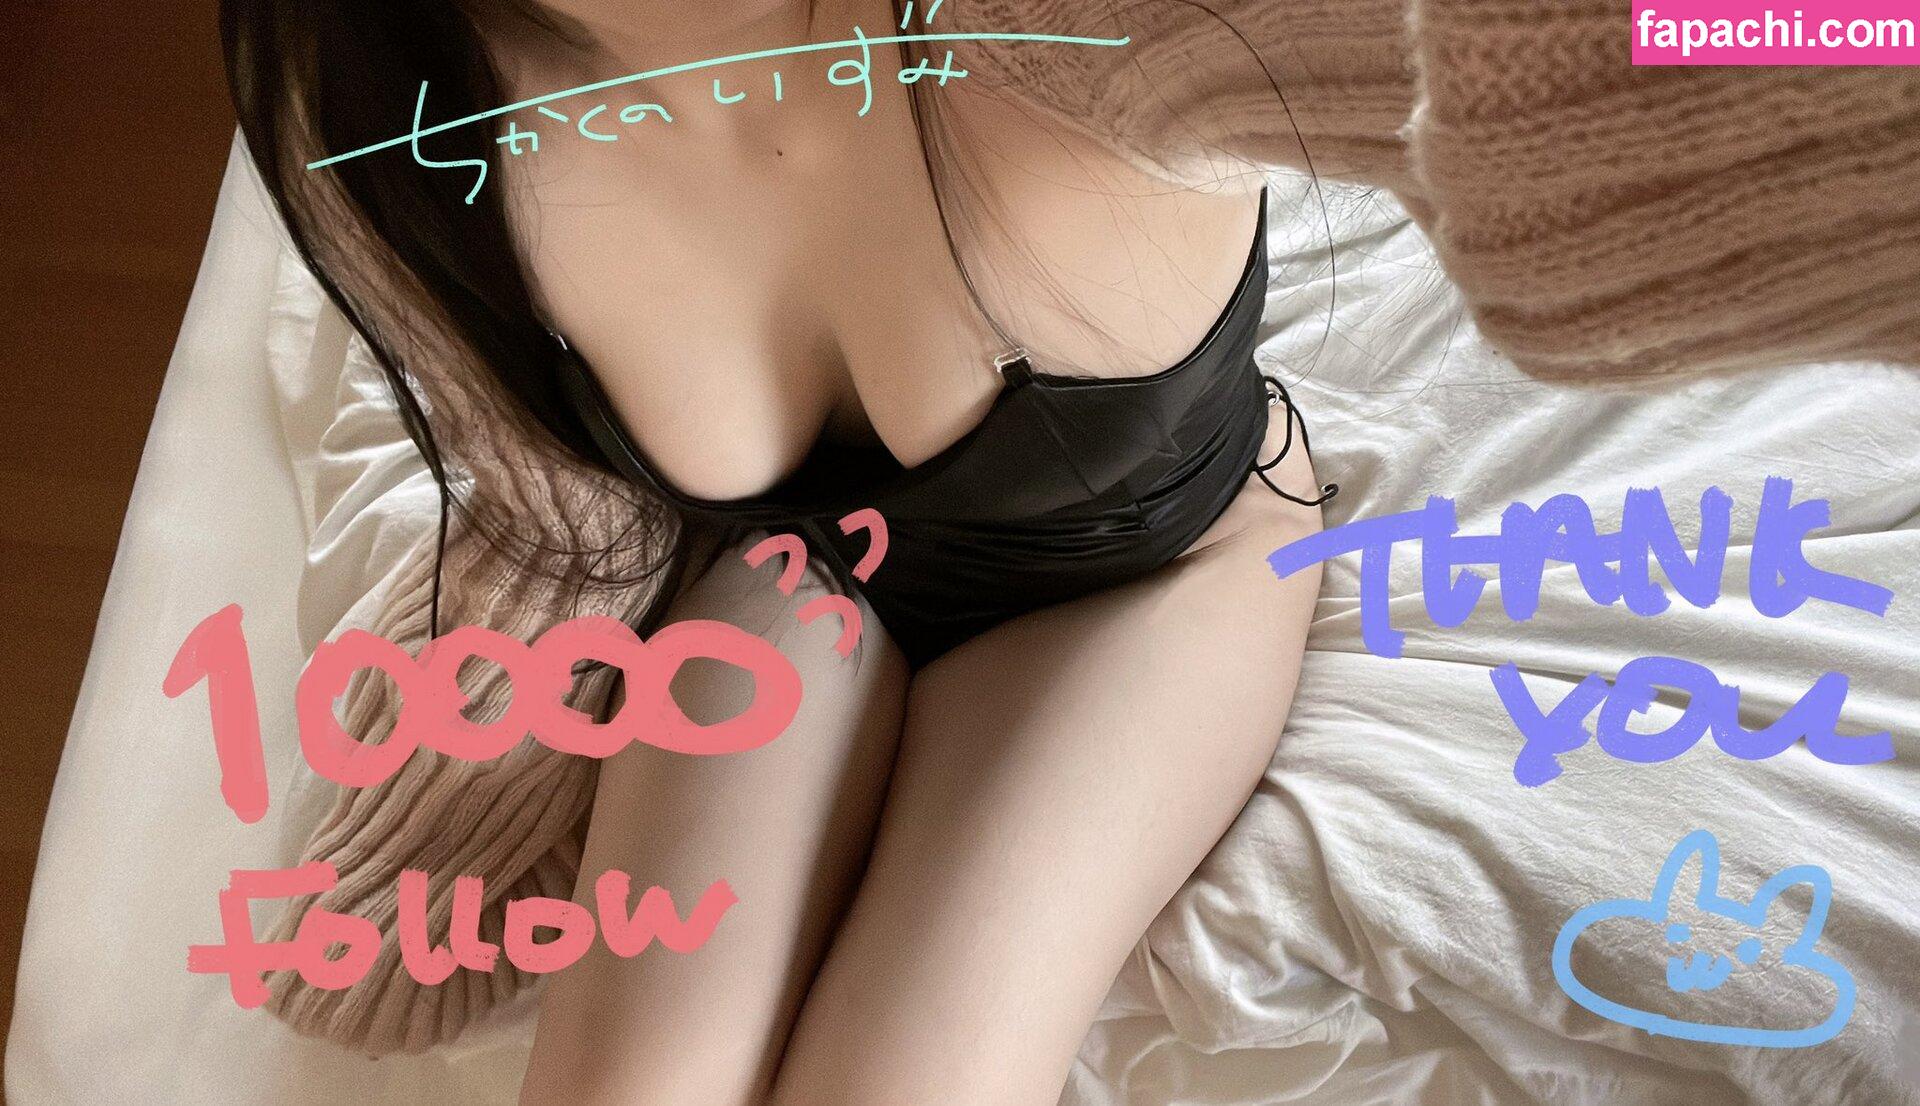 Chikakuno Izumi / chikakunoizumi / watergirloooo / 近野いずみ leaked nude photo #0008 from OnlyFans/Patreon